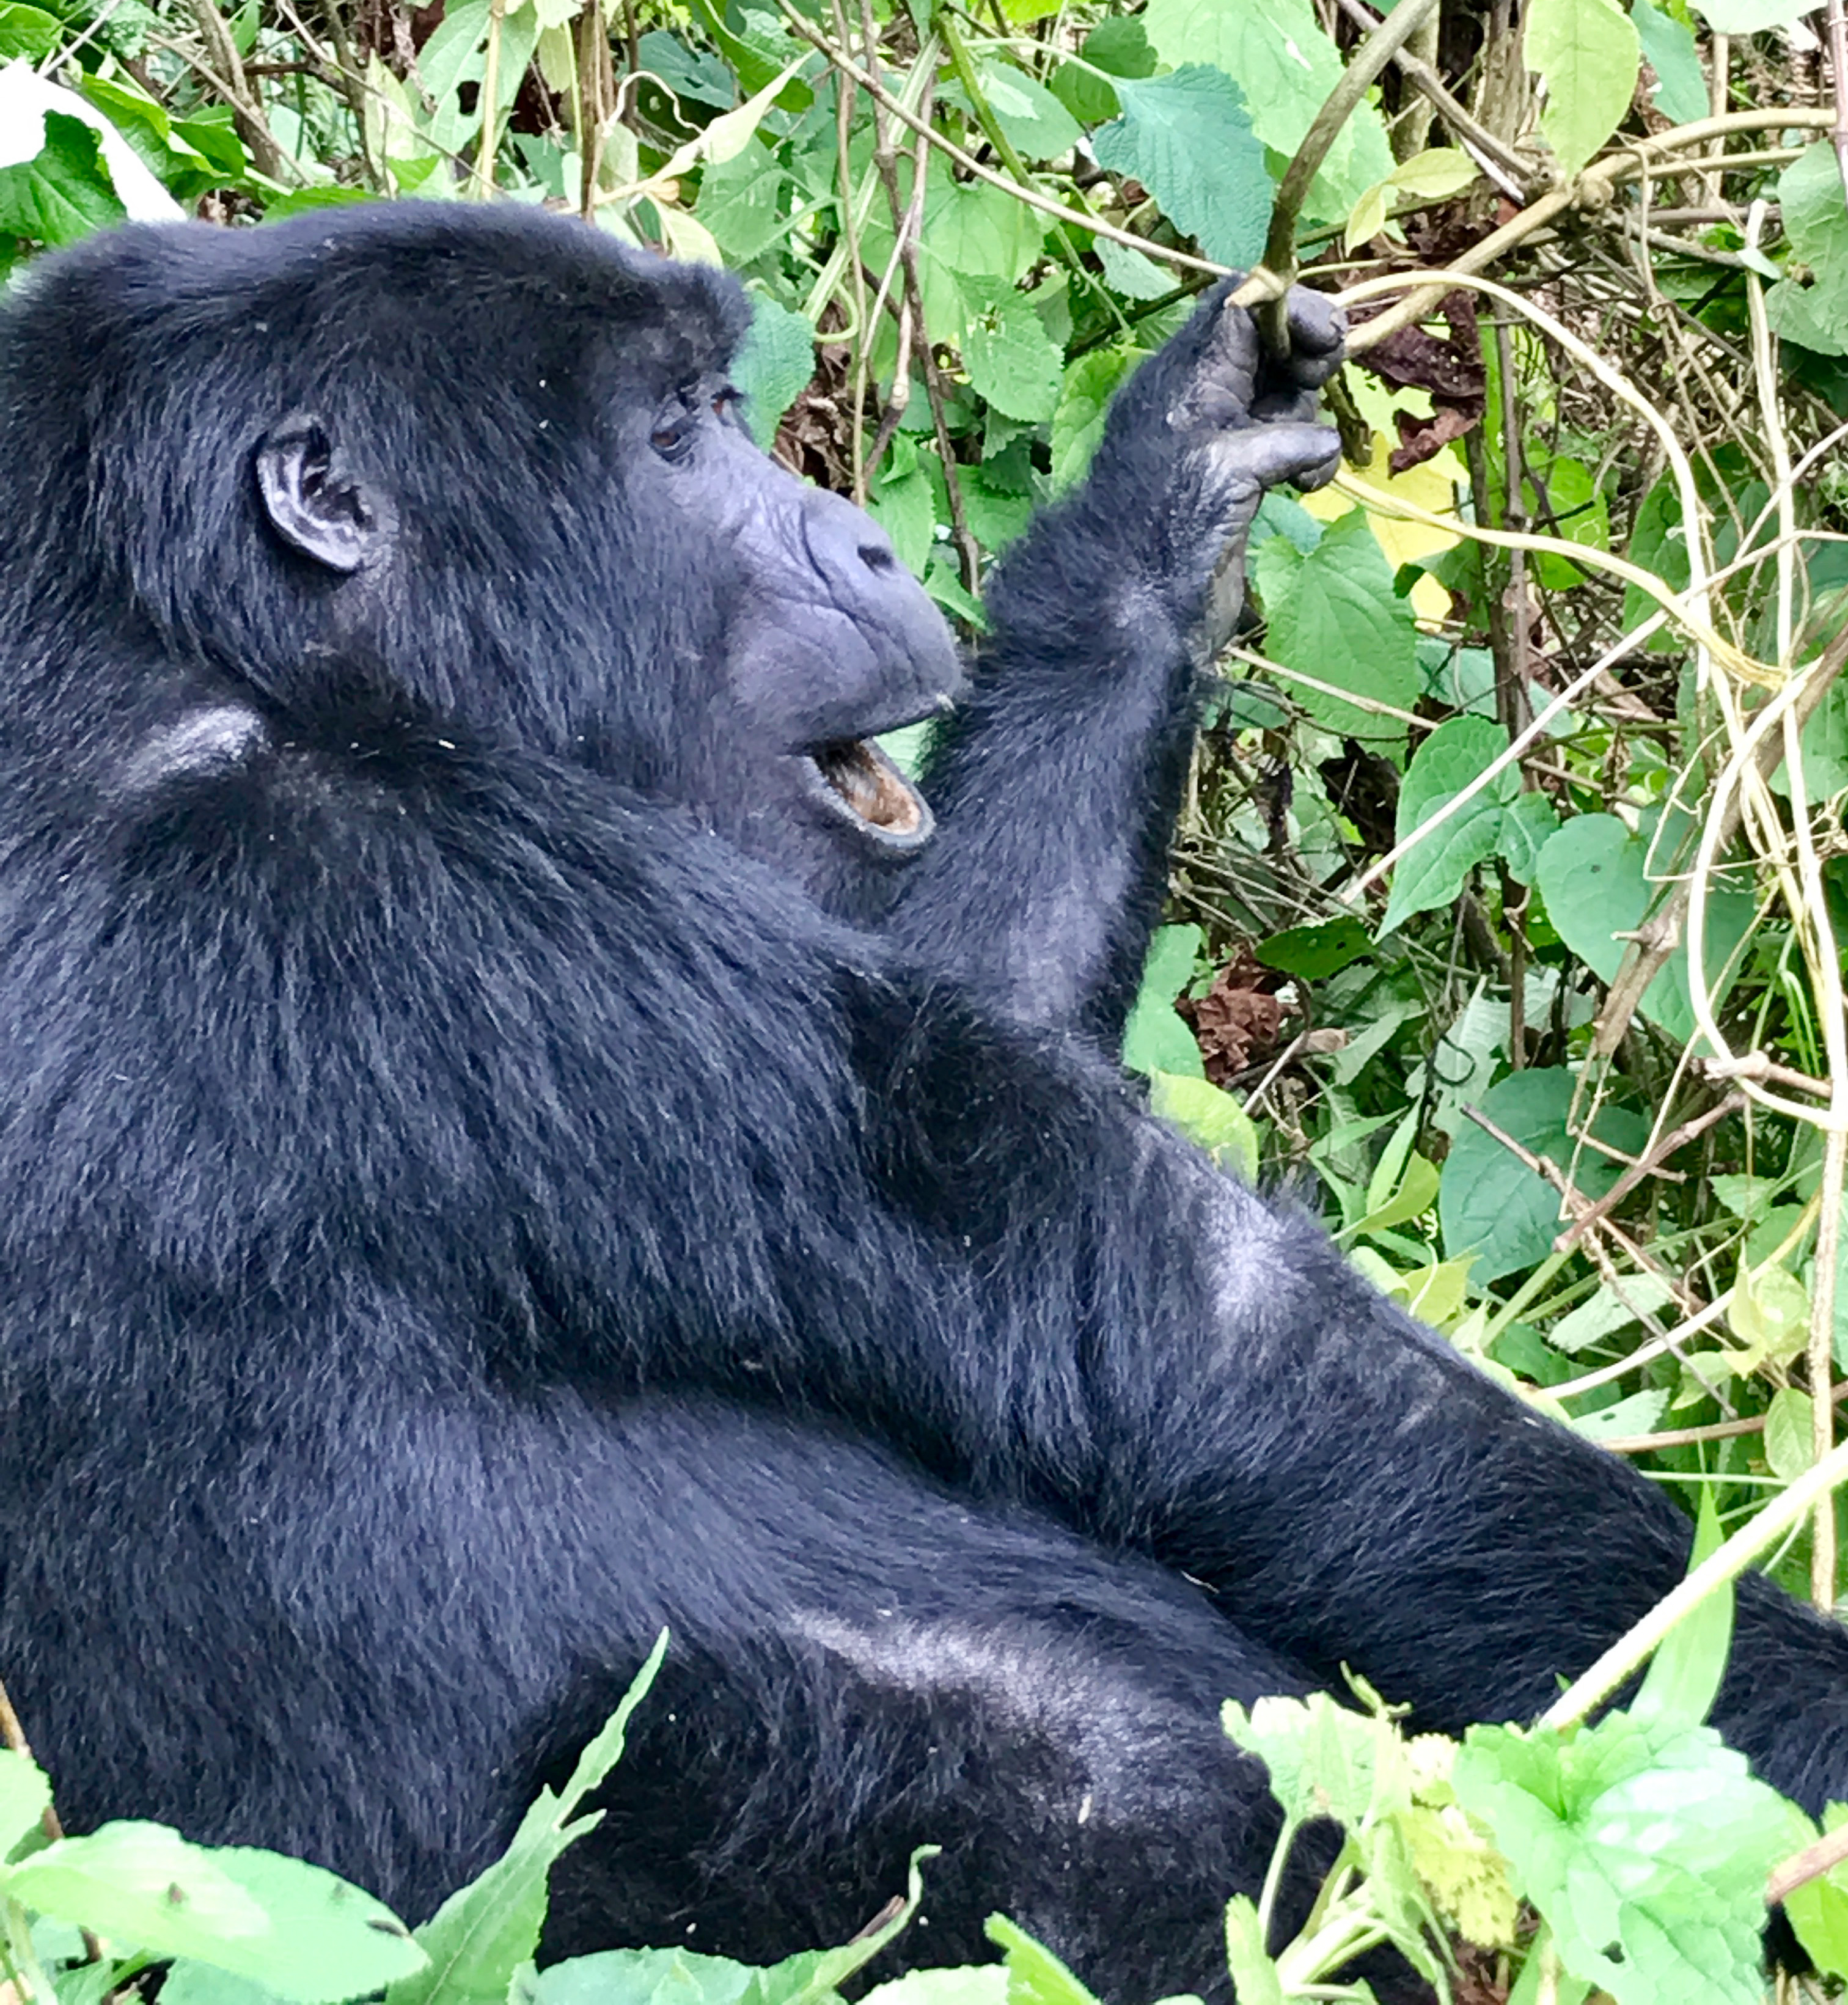 Finalmente fui a caminar por gorila en Uganda y valió la pena la espera - 7